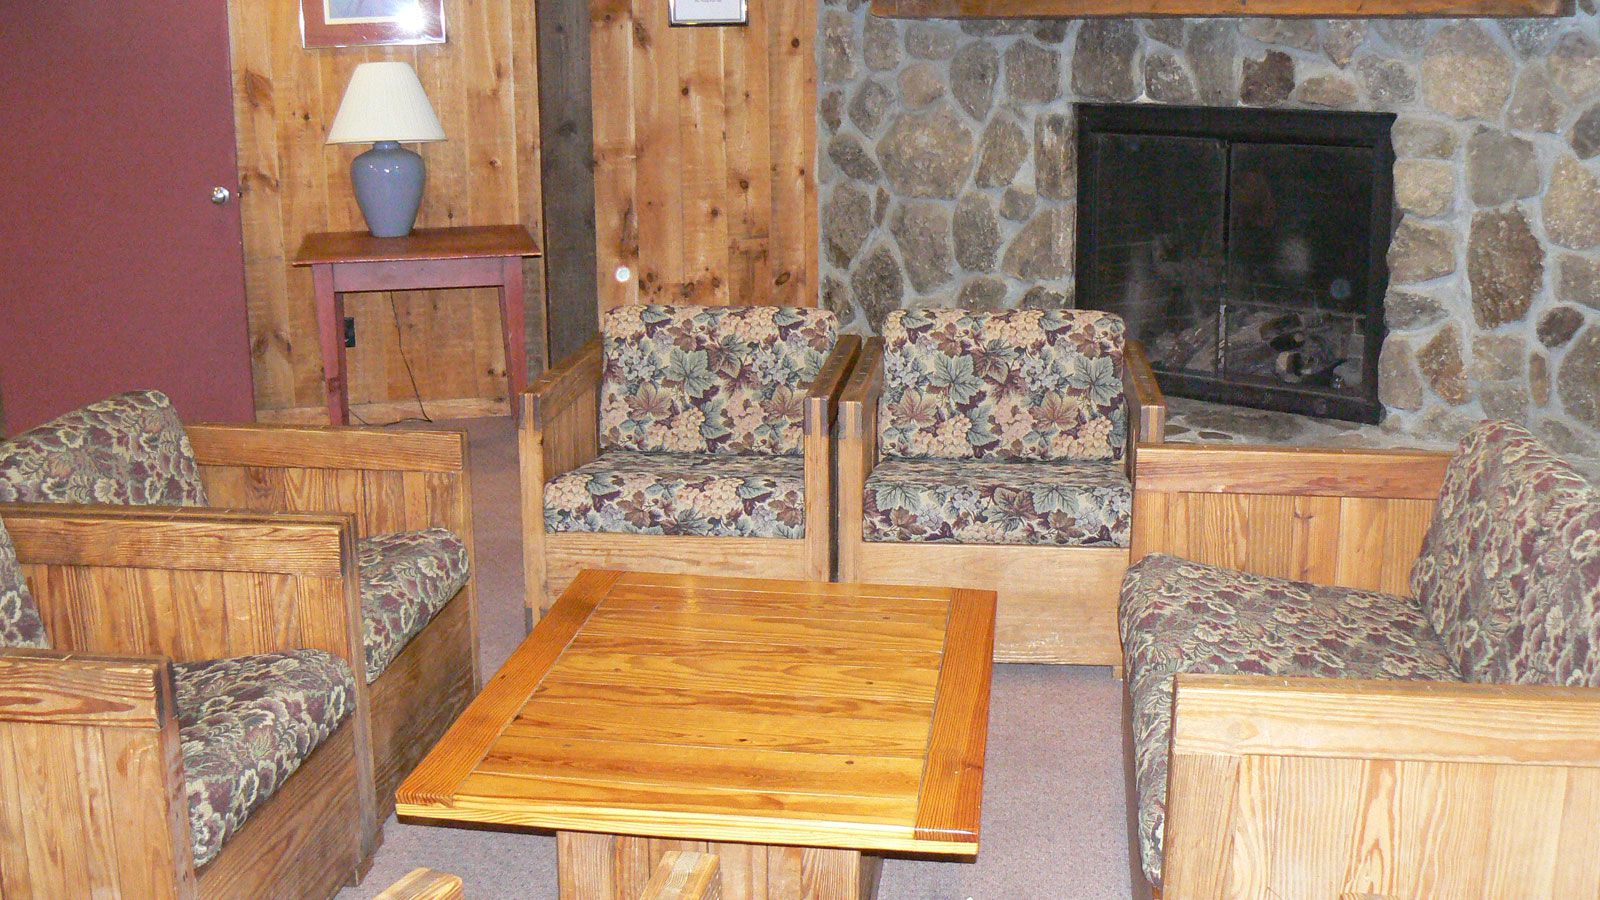 Snowy Owl Inn School Ski Trip Accommodation 